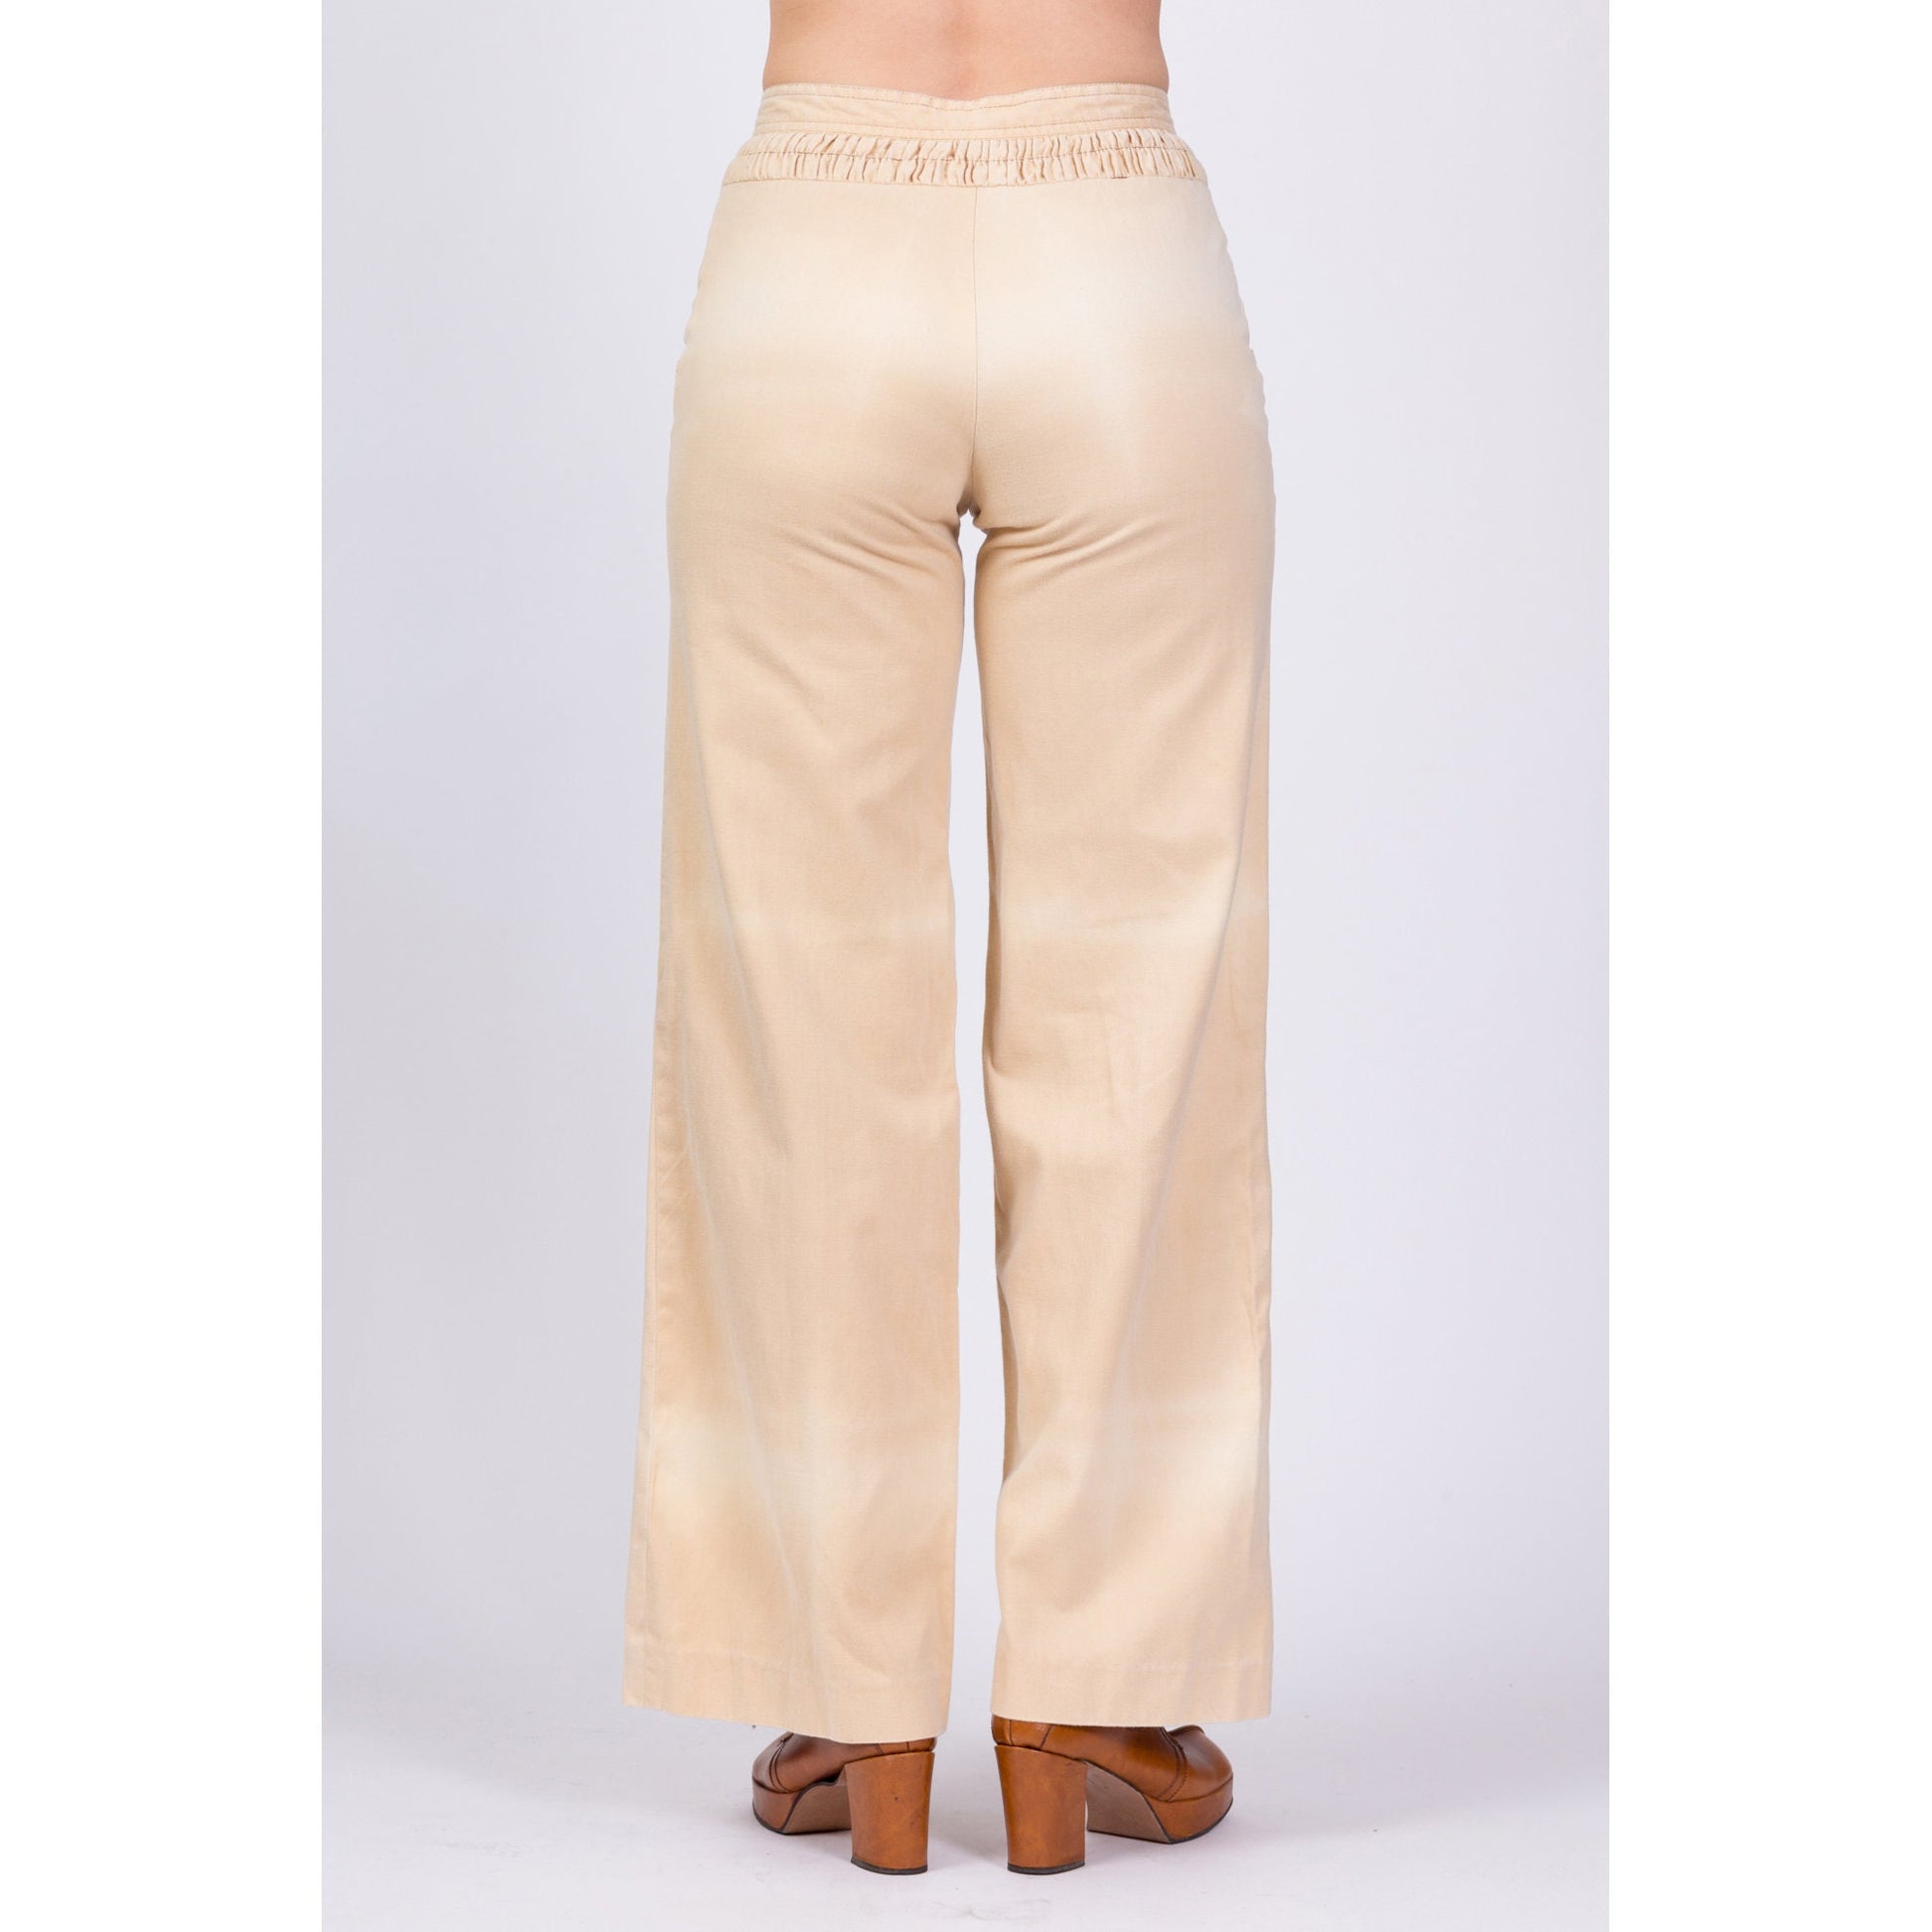 70s Khaki Saddleback Flared Pants - Small, 25.5 – Flying Apple Vintage